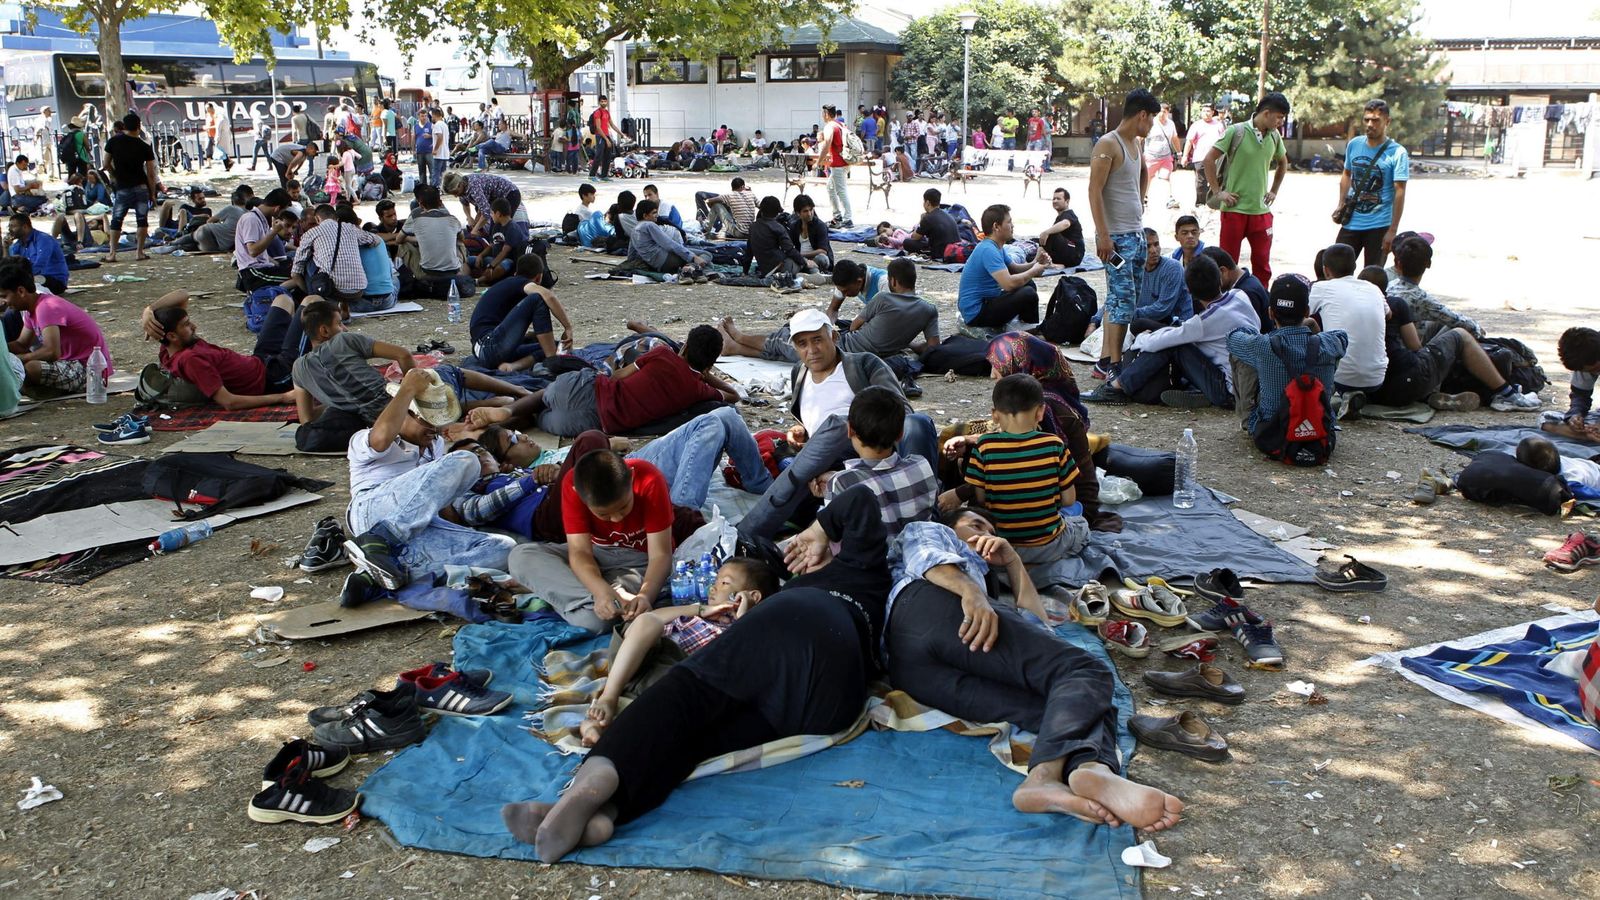 Foto: Numerosos inmigrantes sirios, paquistaníes y afganos, descansan antes de partir desde Serbia a distintos países de la UE. (EFE)